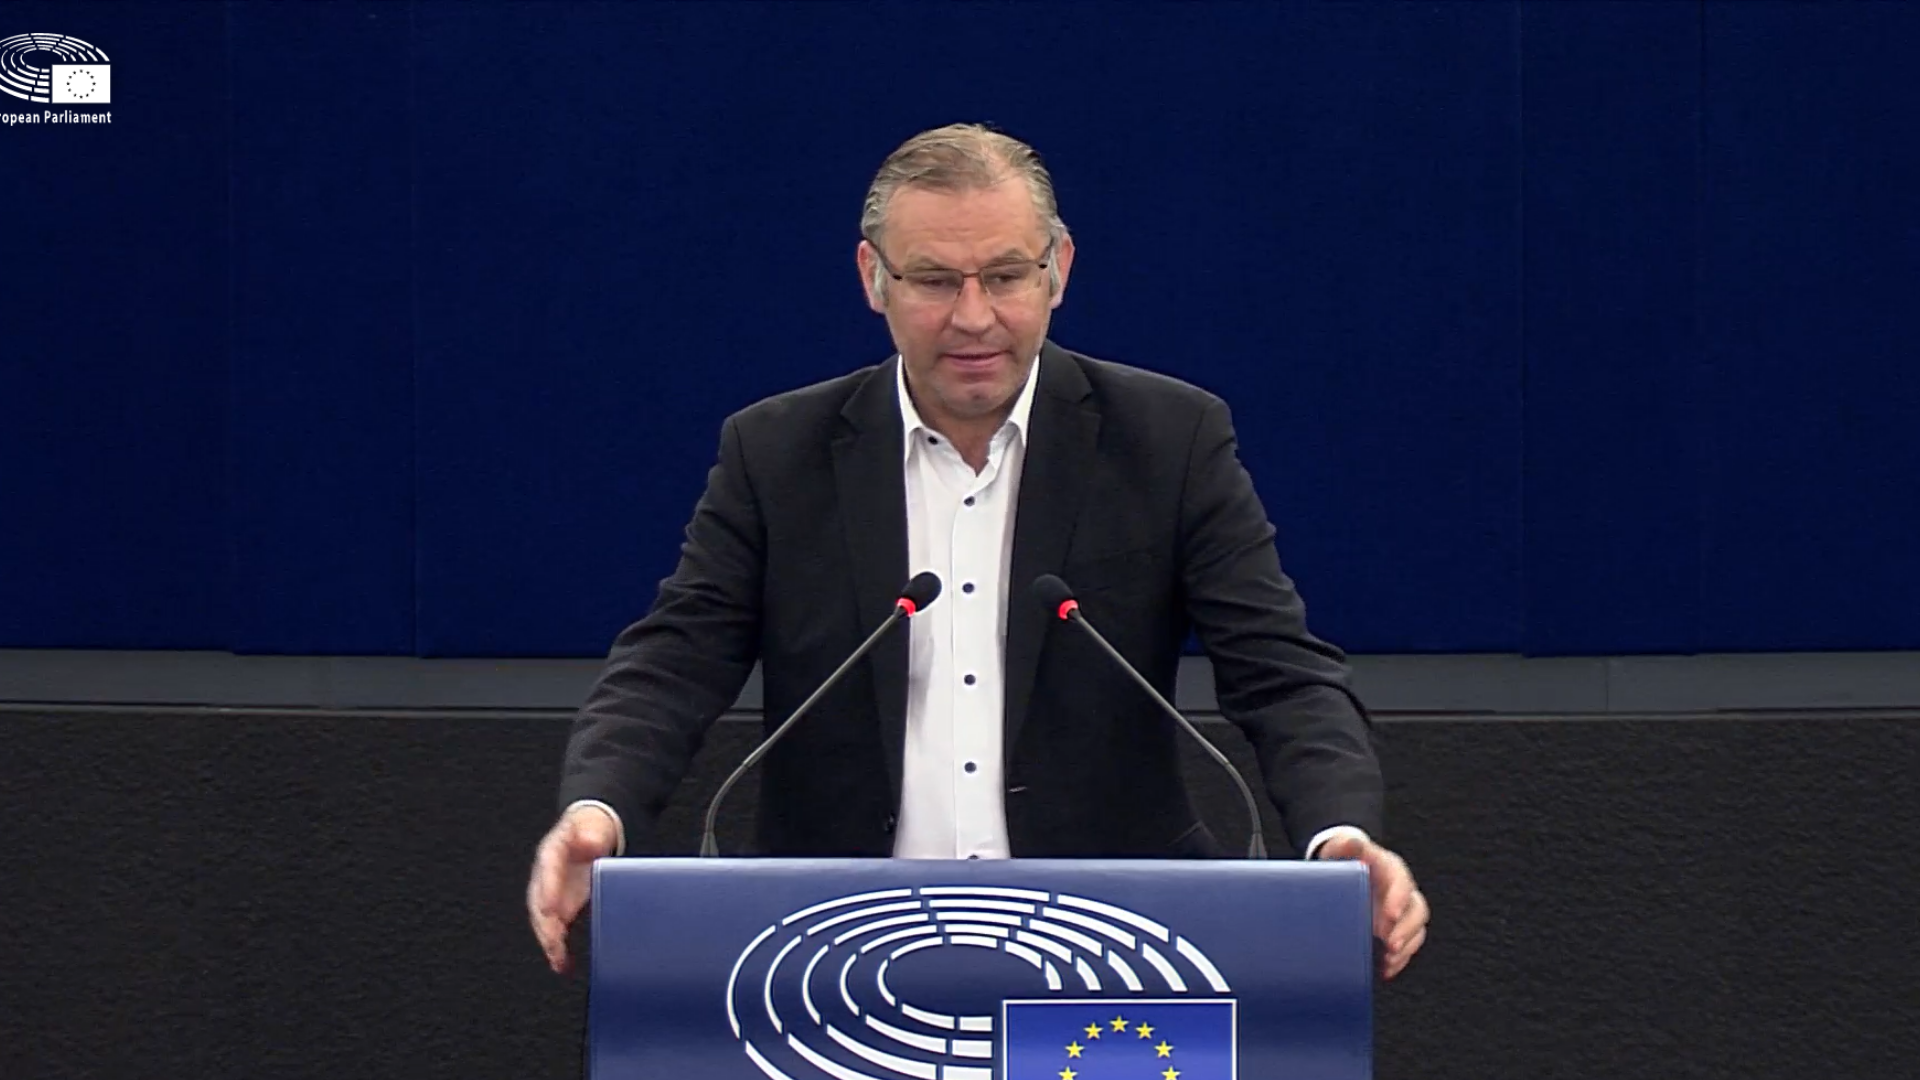 Standbild aus Video, MEP Norbert Lins steht in der Mitte an einem Podium mit EU-Flagge, dunkelblauer Hintergrund